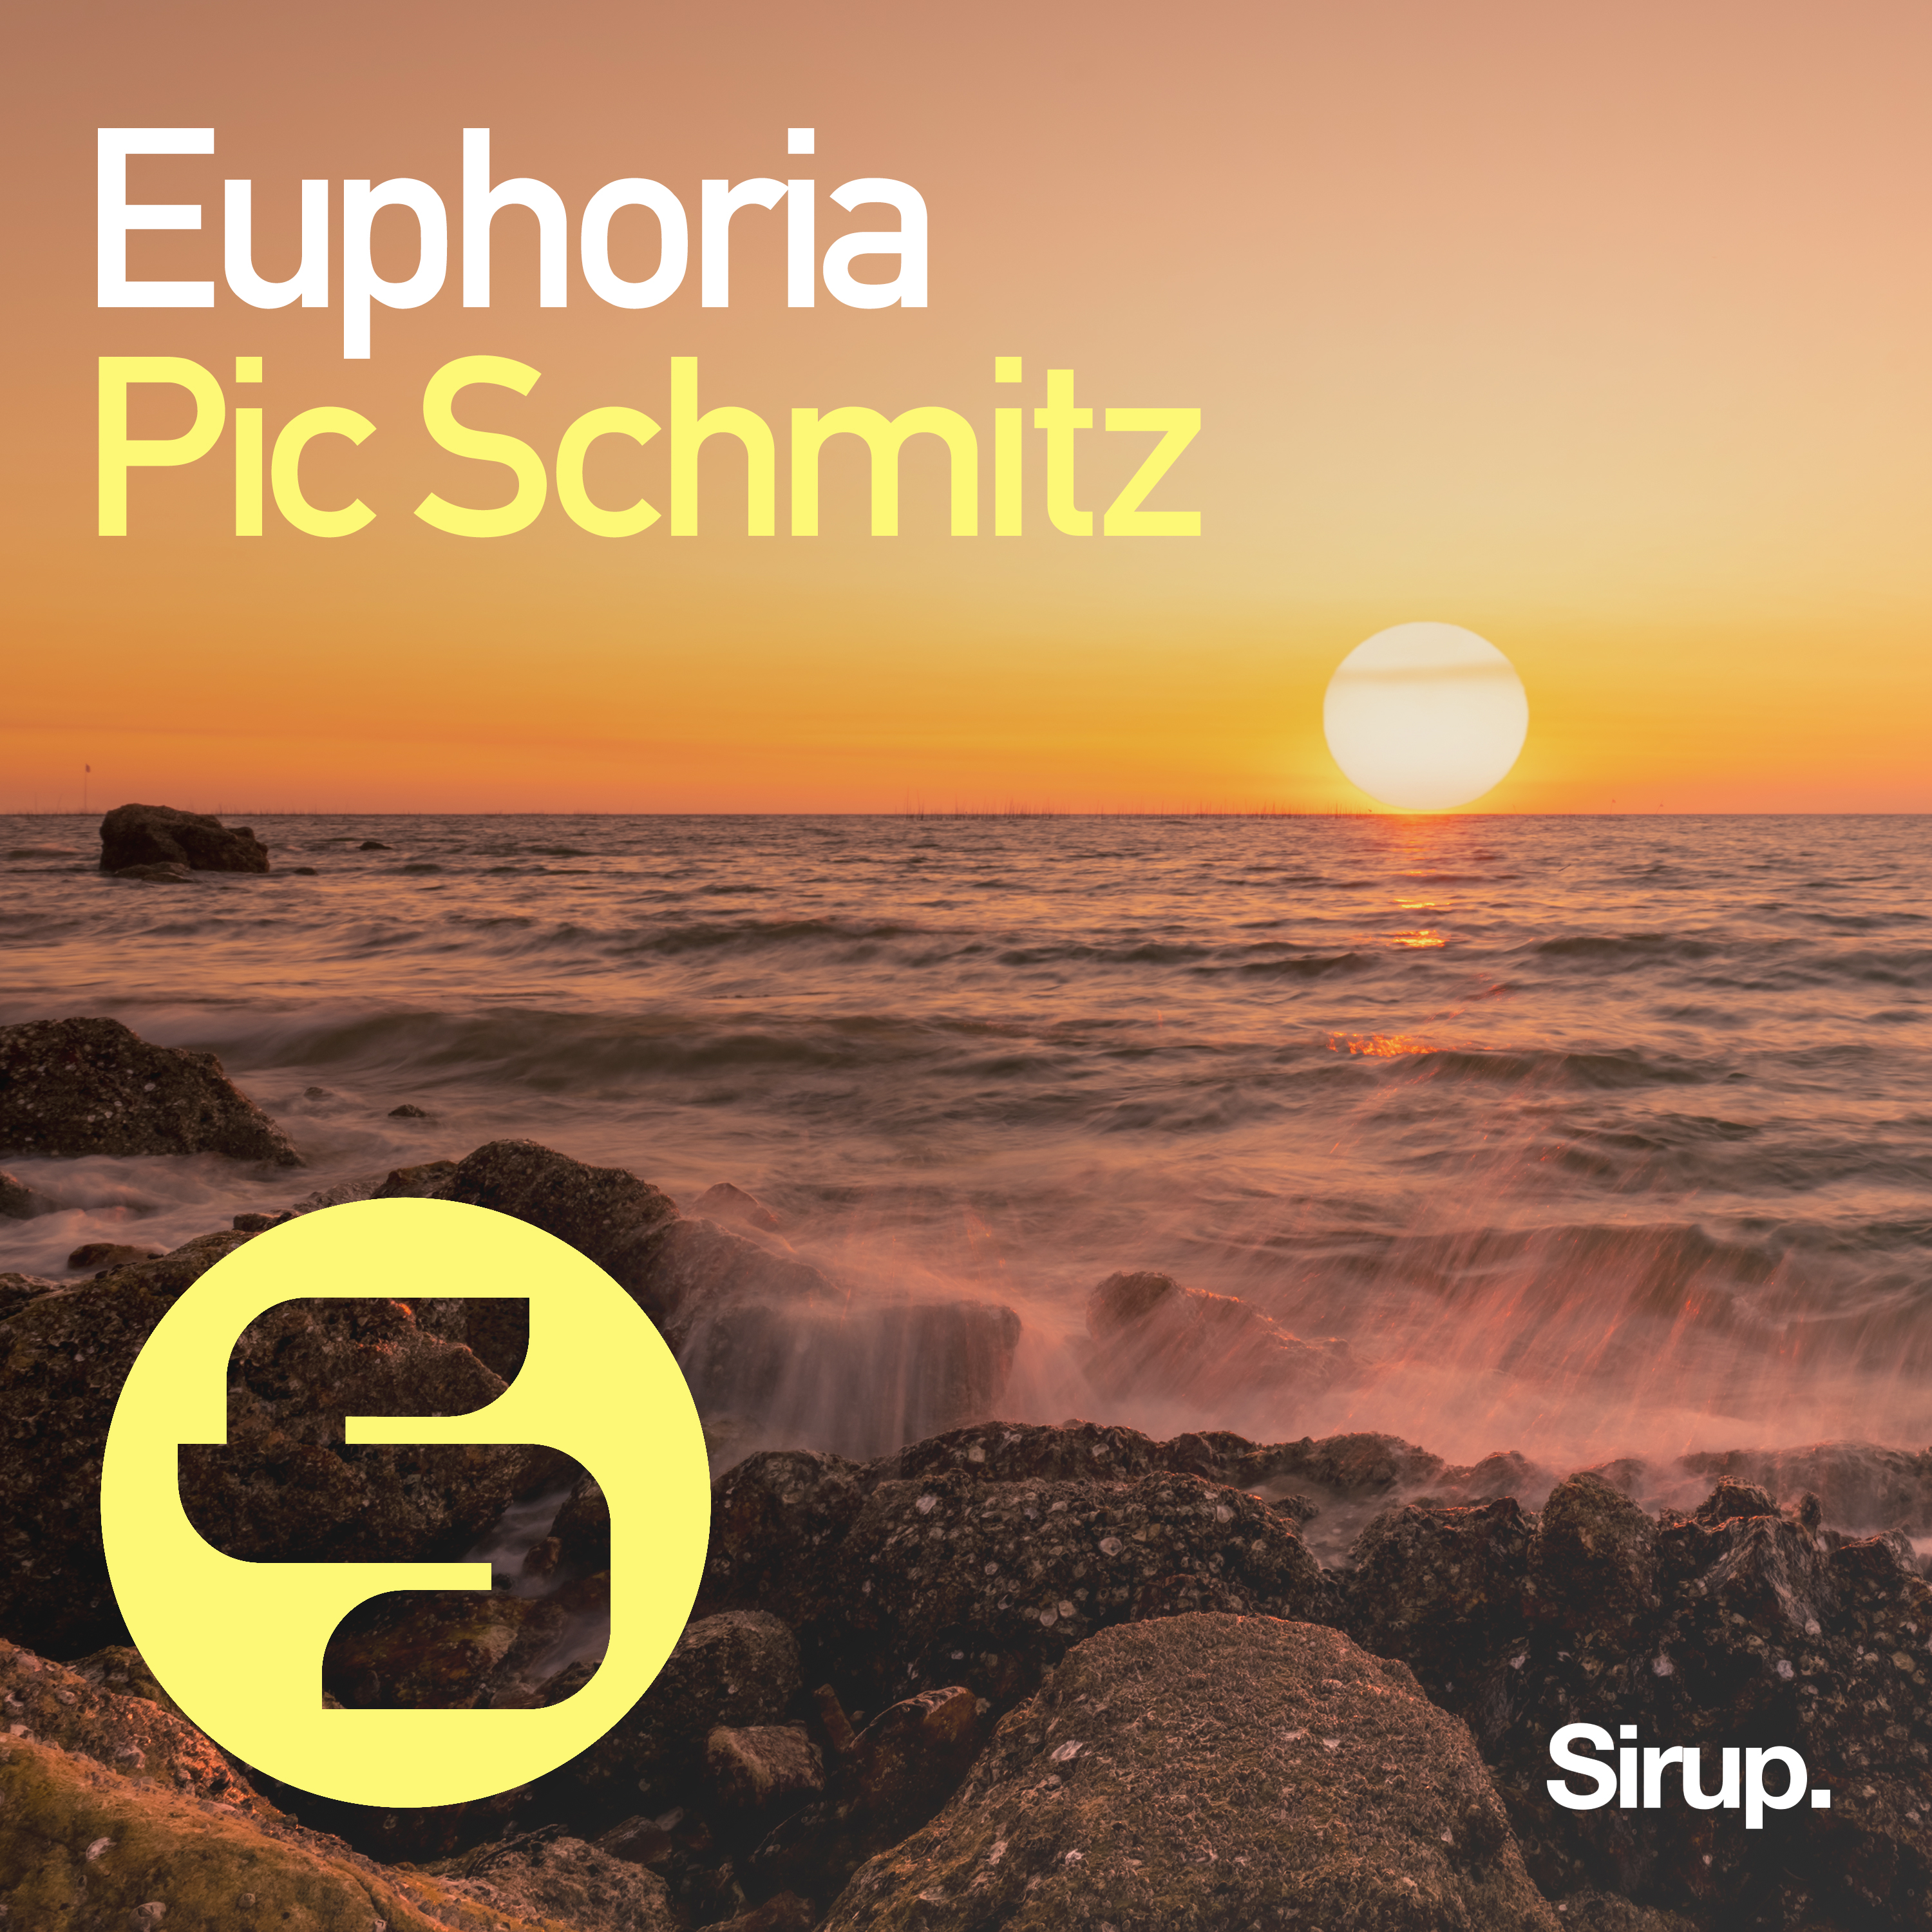 Euphoria (Sunrise Mix) | Pic Schmitz